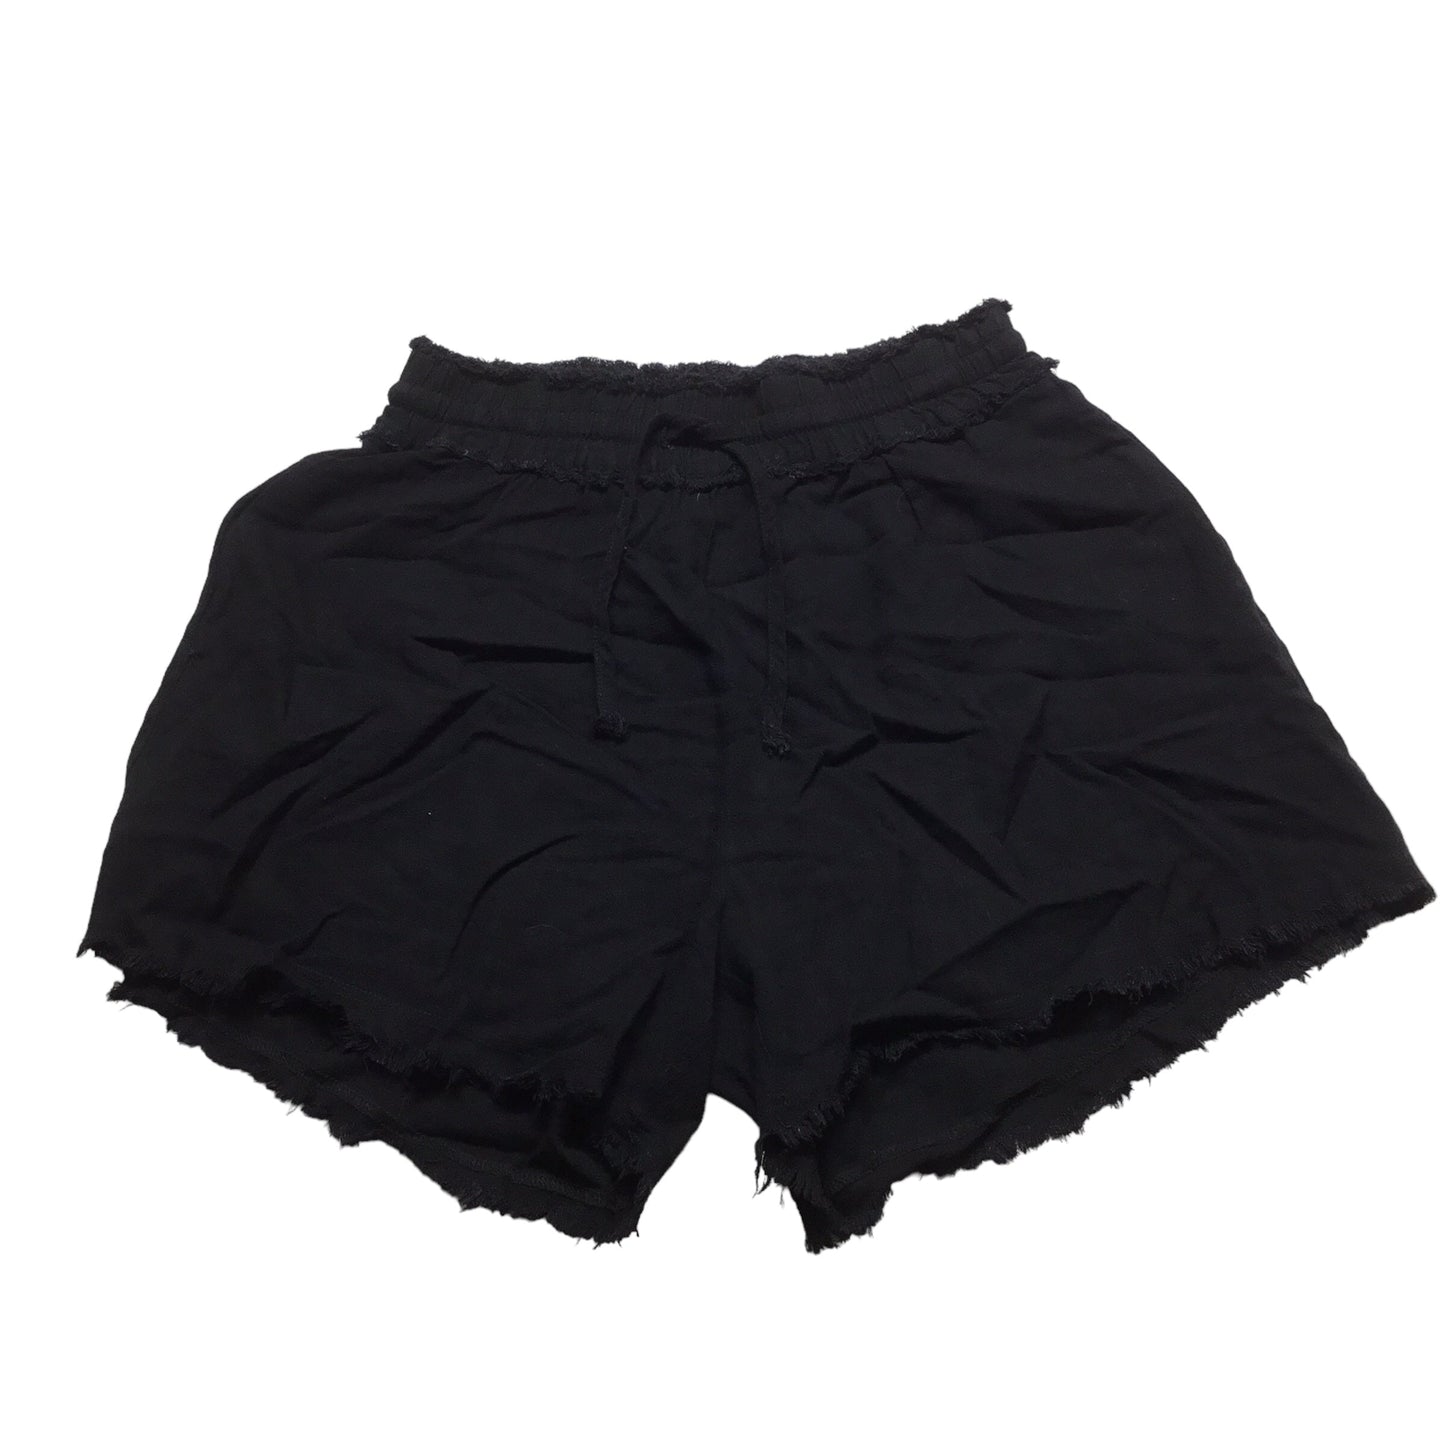 Black Shorts La Miel, Size M